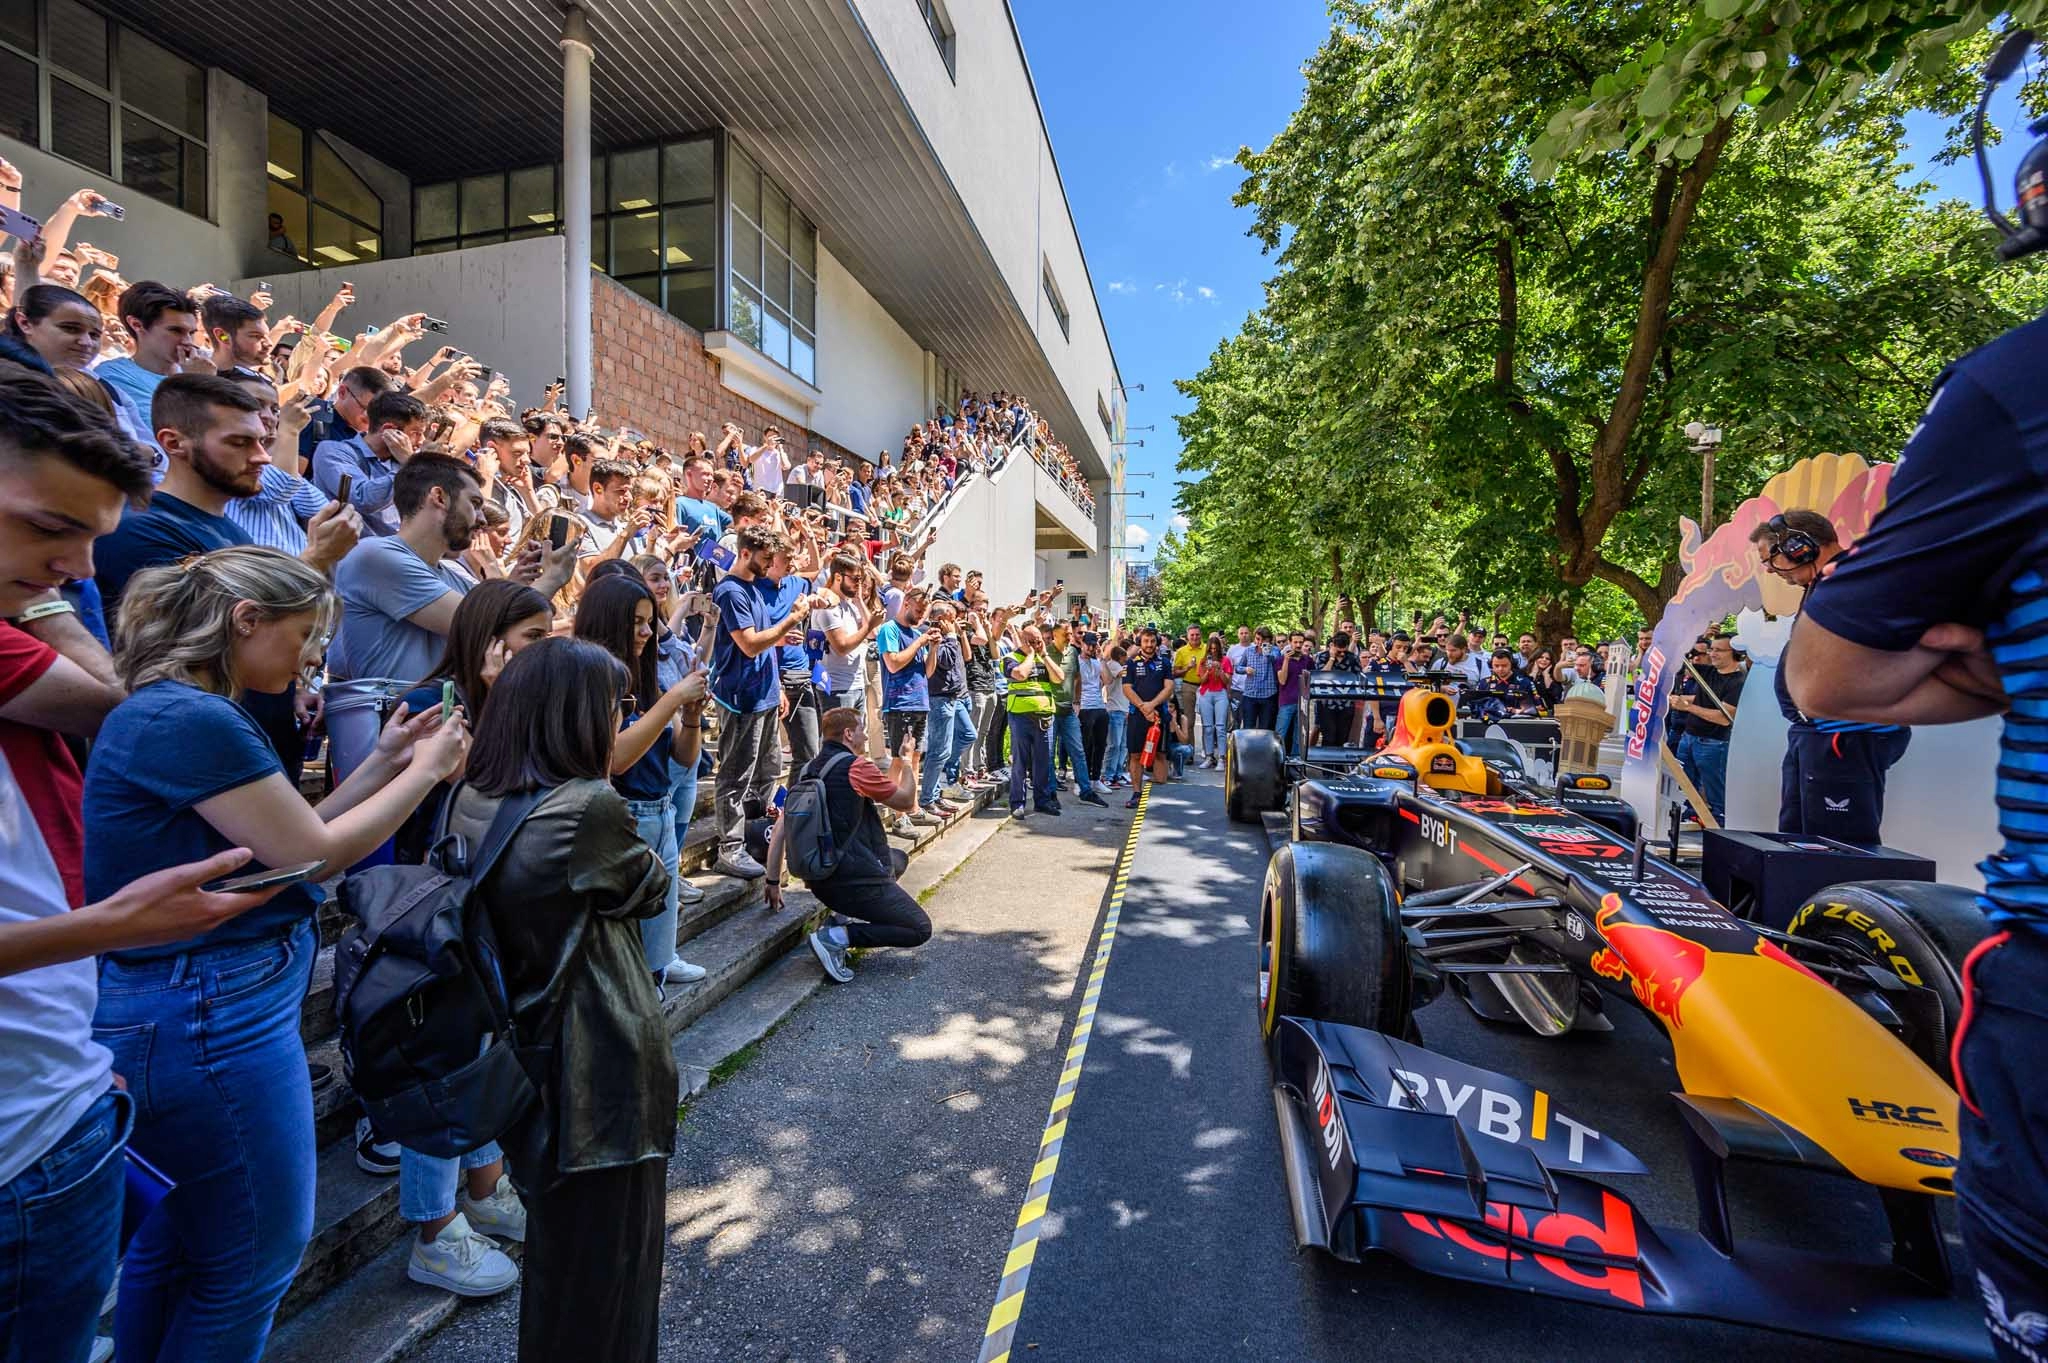 Tim Red Bull Racinga posjetio Mašinski fakultet i održao predavanje studentima, upaljen bolid RB7